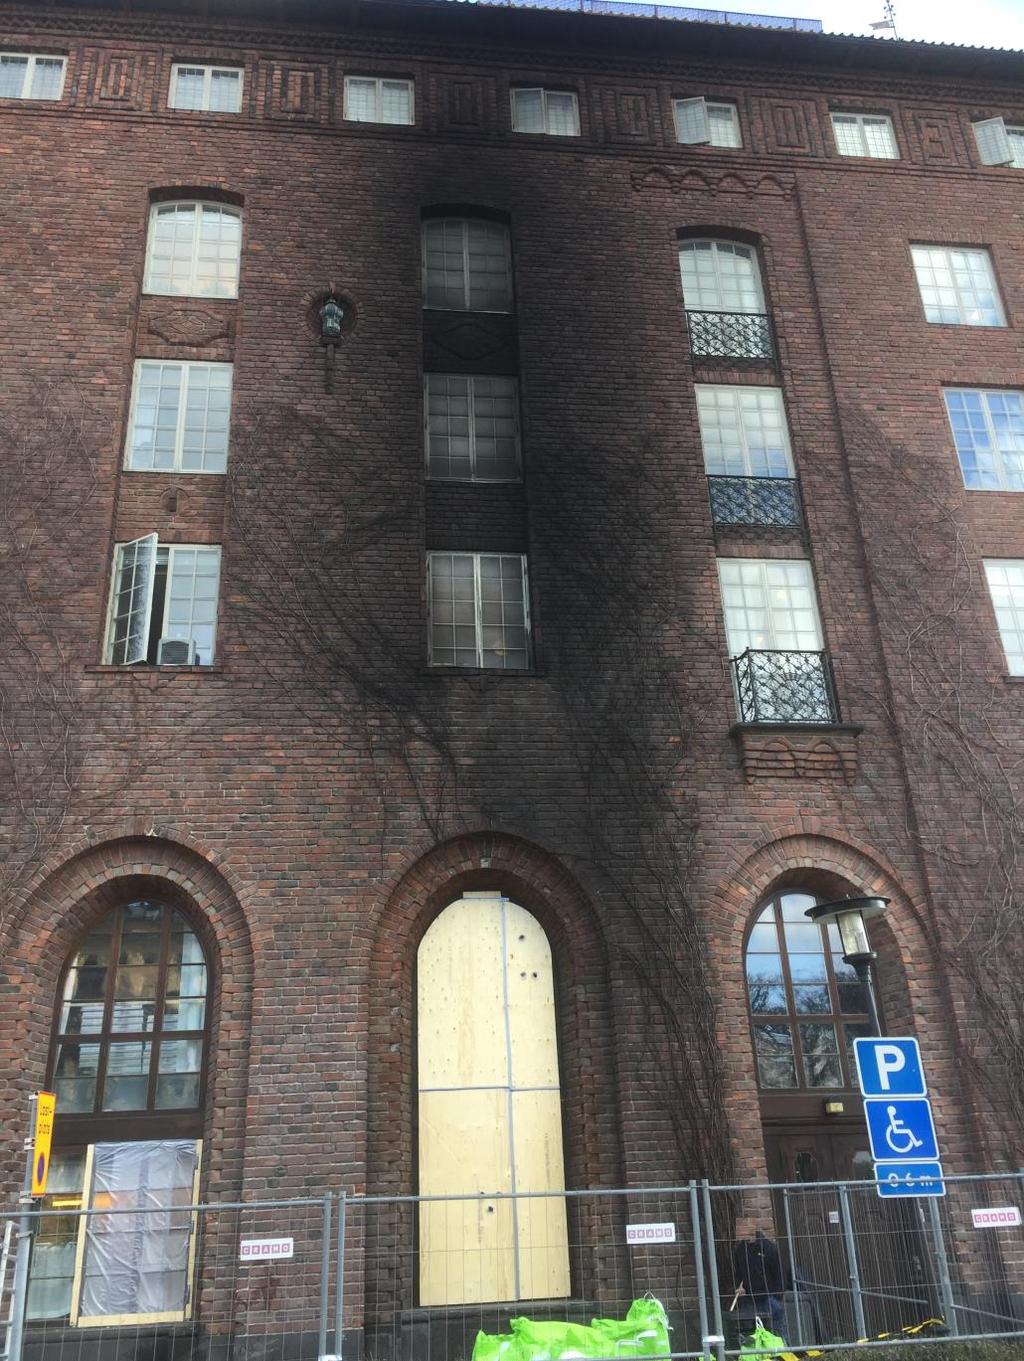 Branden från bilen är intensiv och påverkar fasaden med rök, värme och sotpartiklar vertikalt längst hela byggnaden samt även till del av taket.